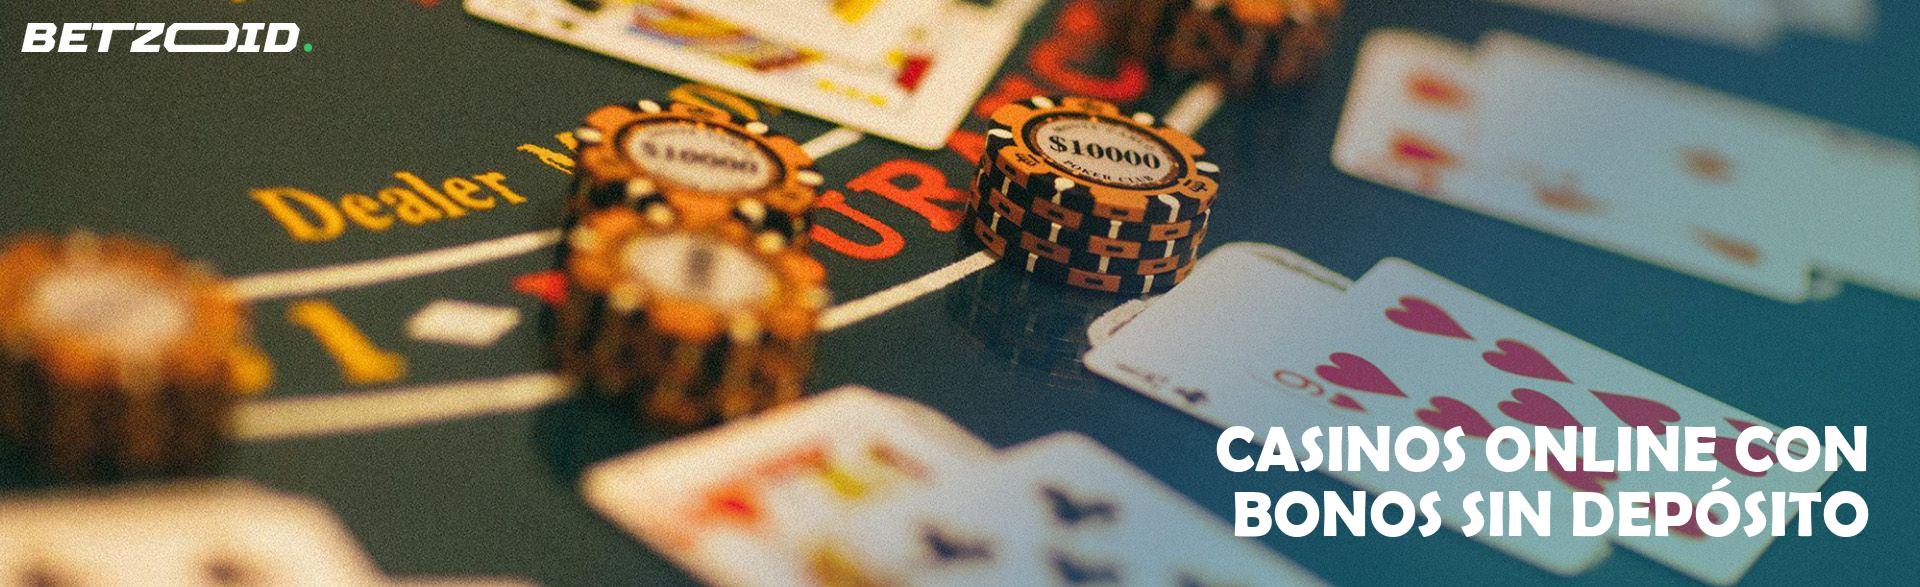 Casinos online con bonos